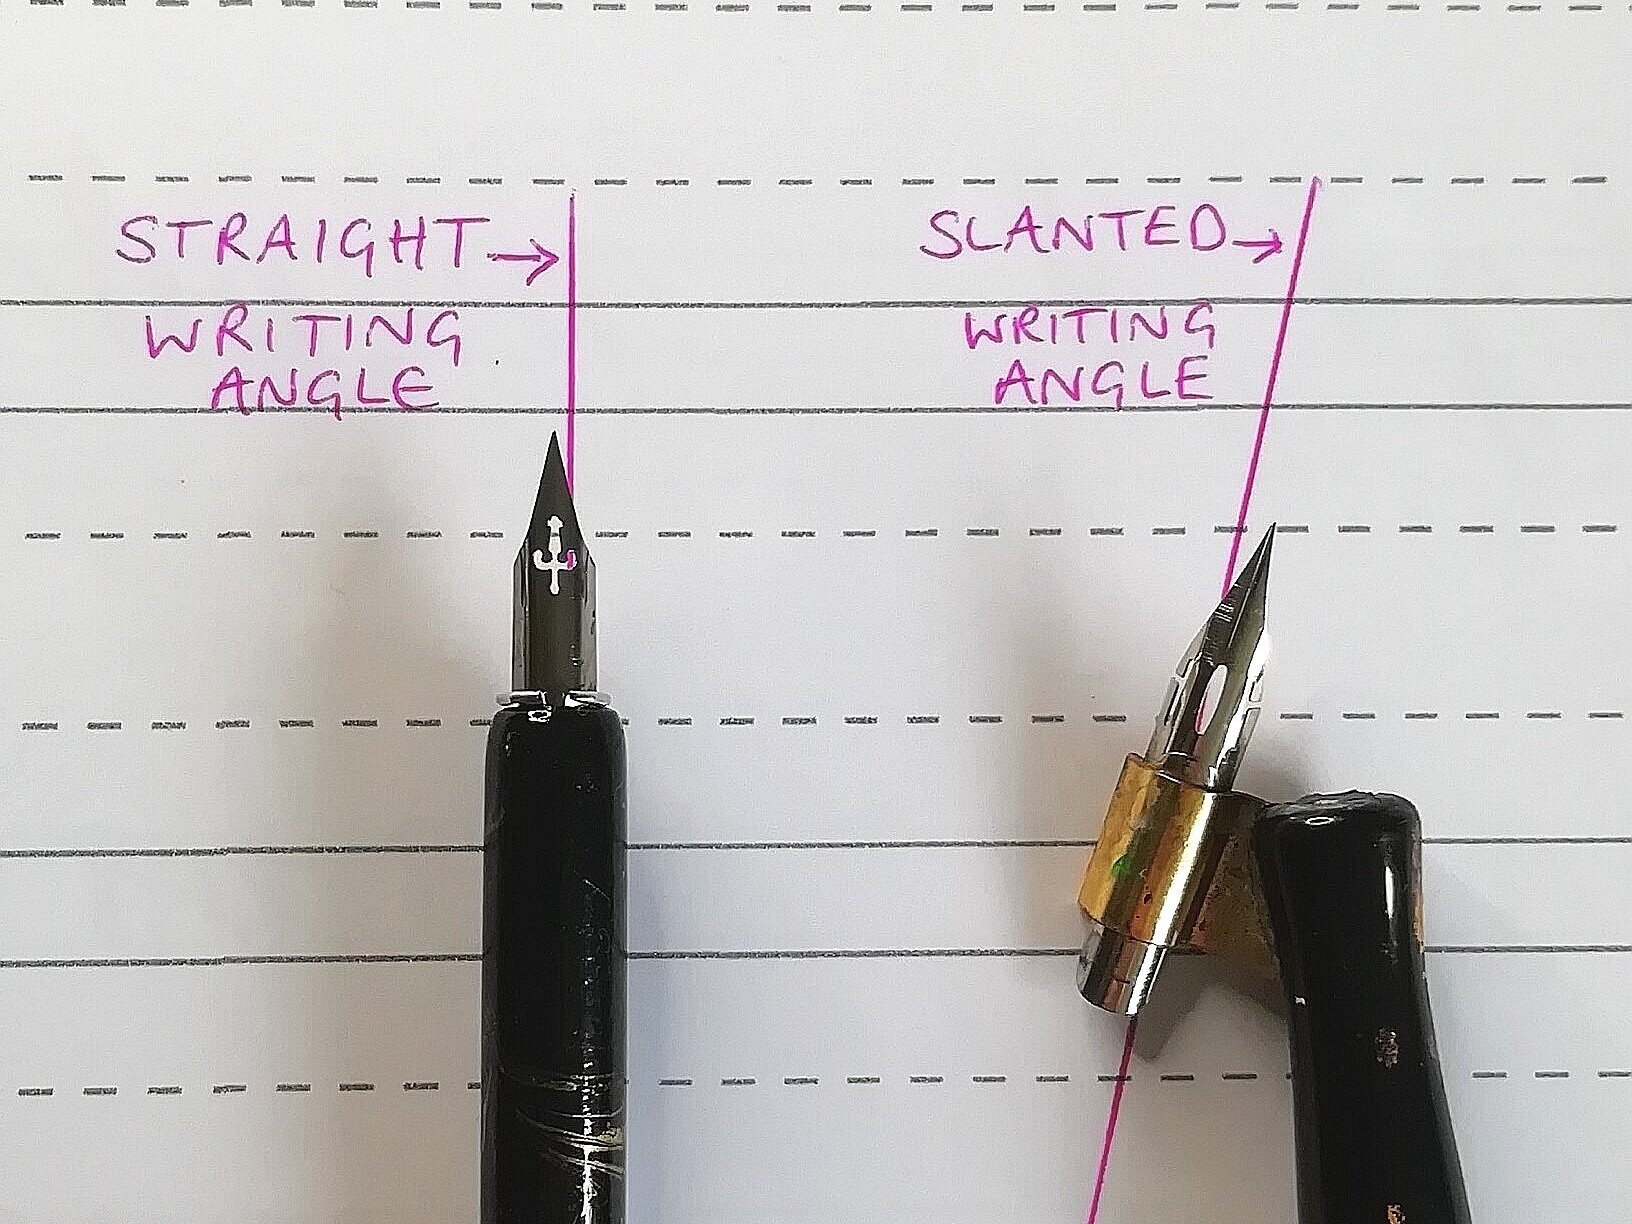 Straight v/s Oblique Pen (Calligraphy Pens) - Penkraft